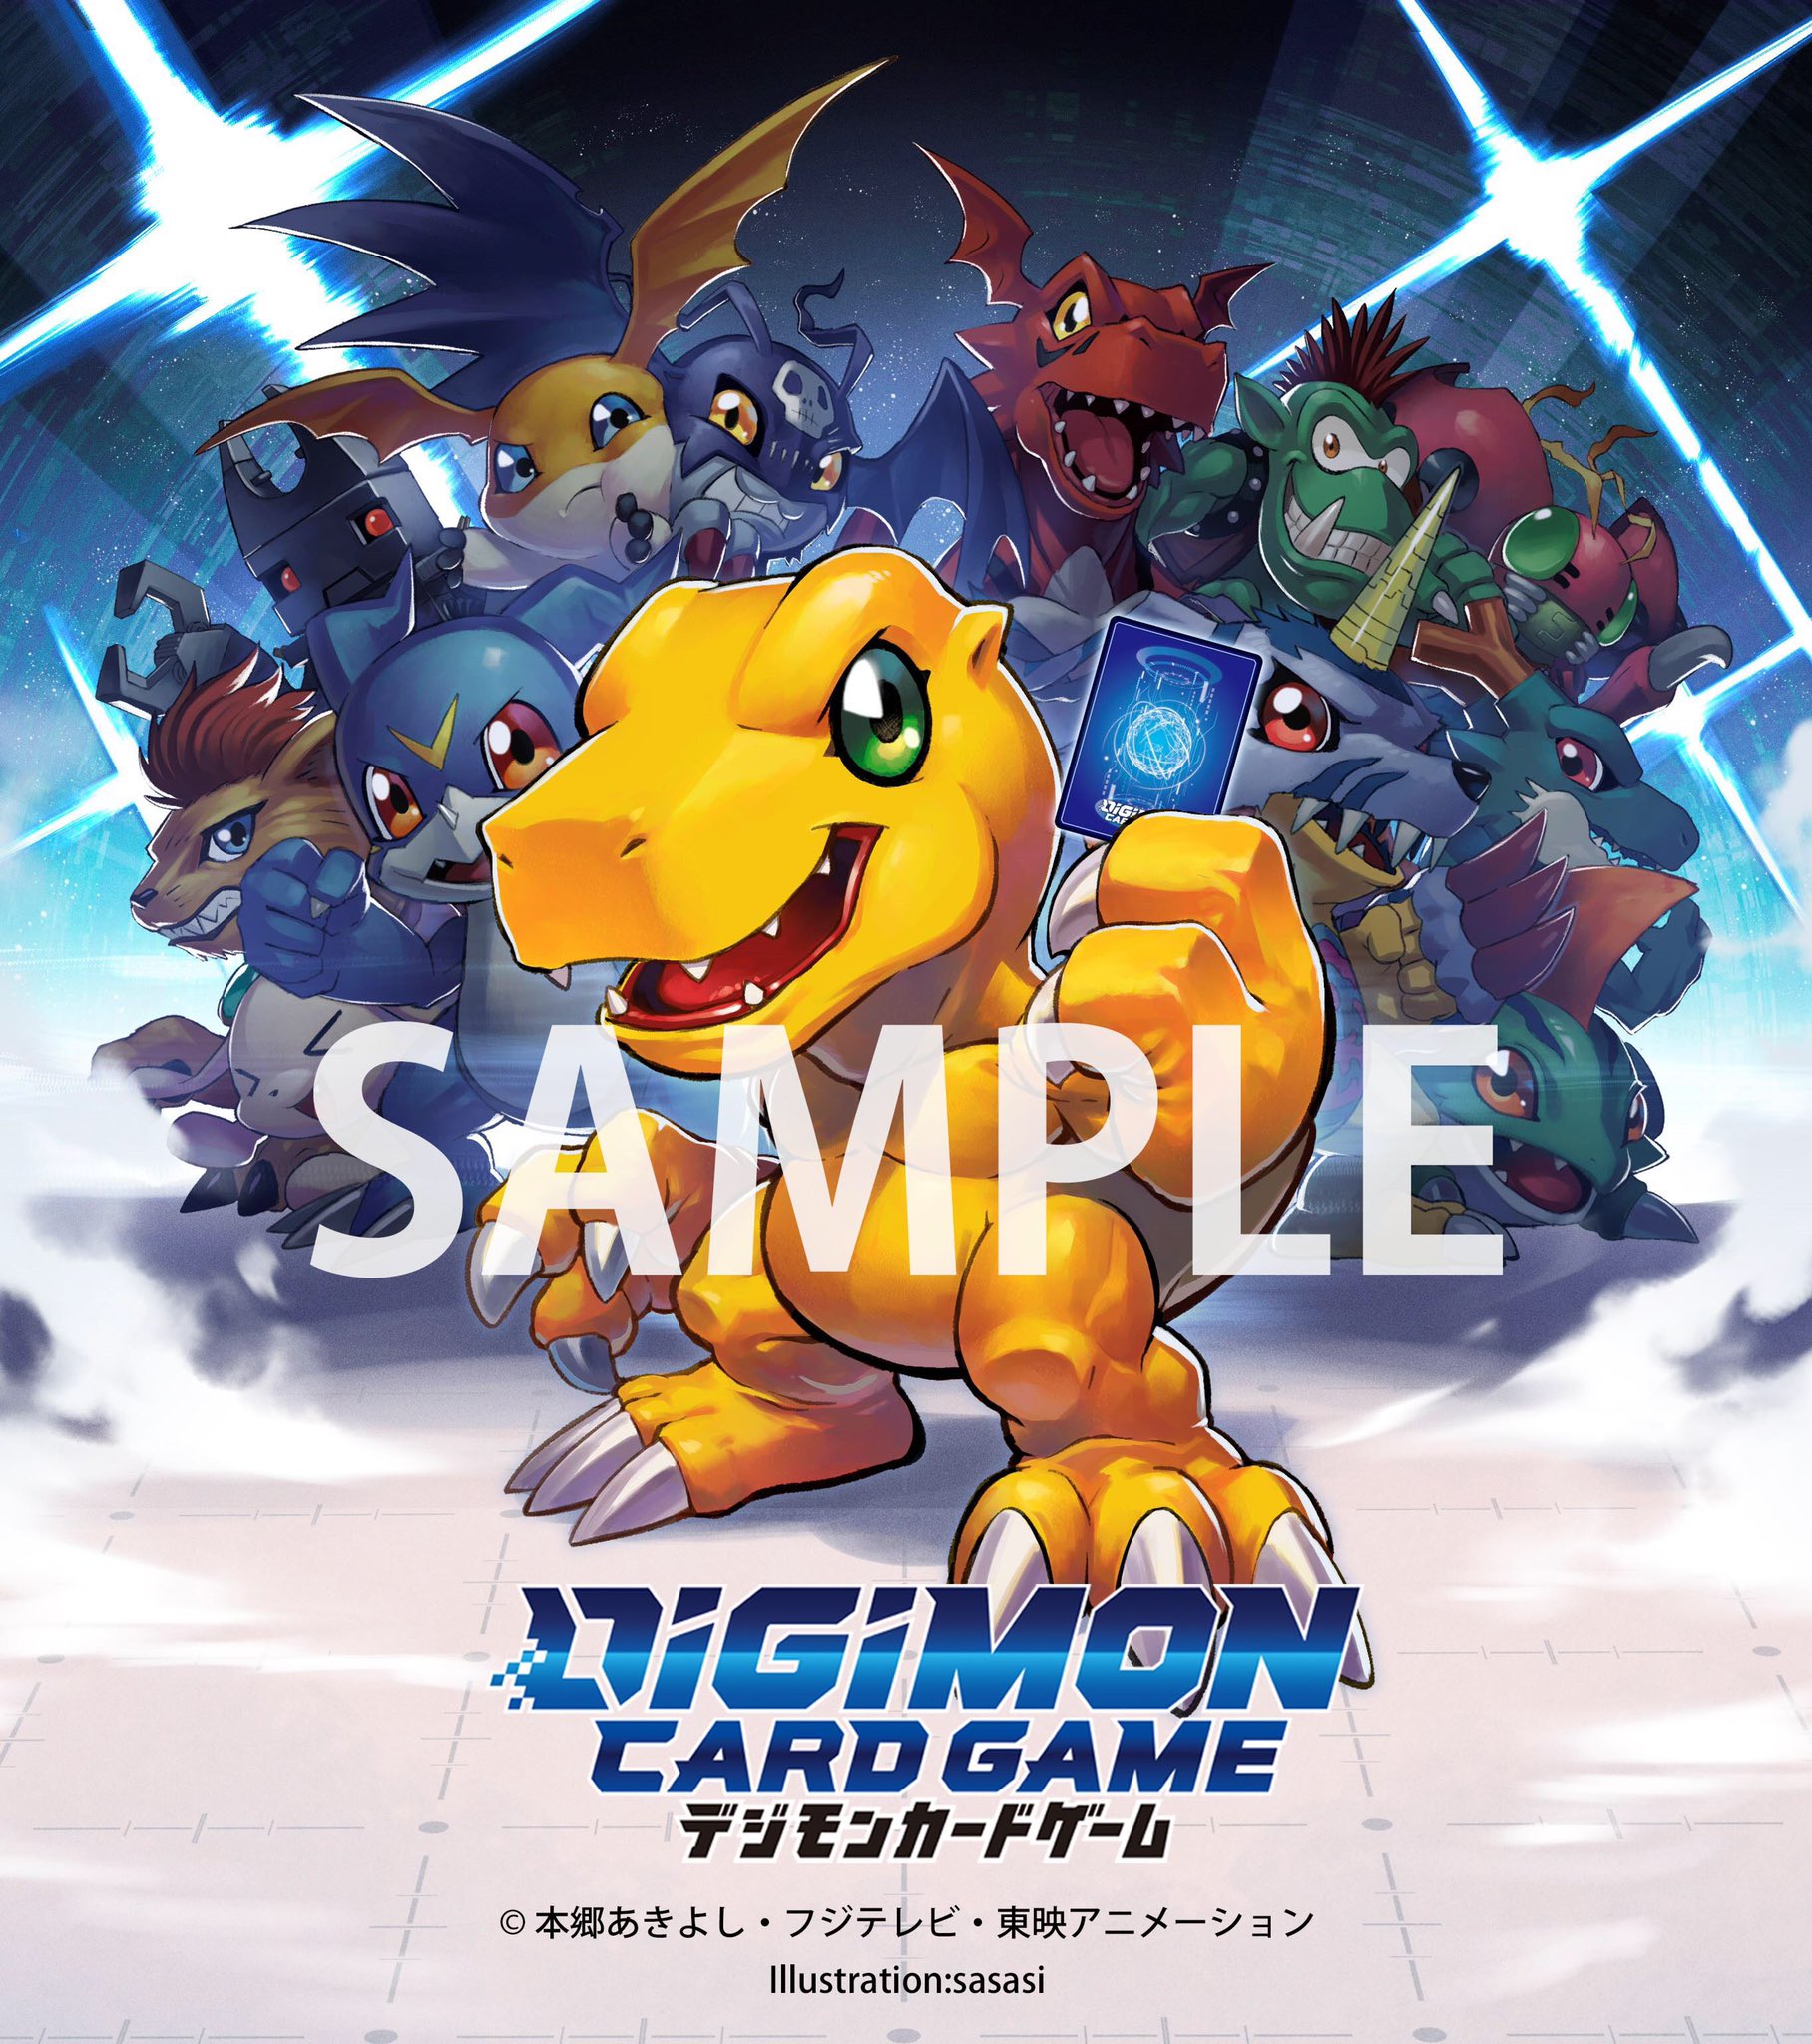 Juego de mesa - Juegos de mesa o rol - Página 2 Digimoncardart_january26_2020